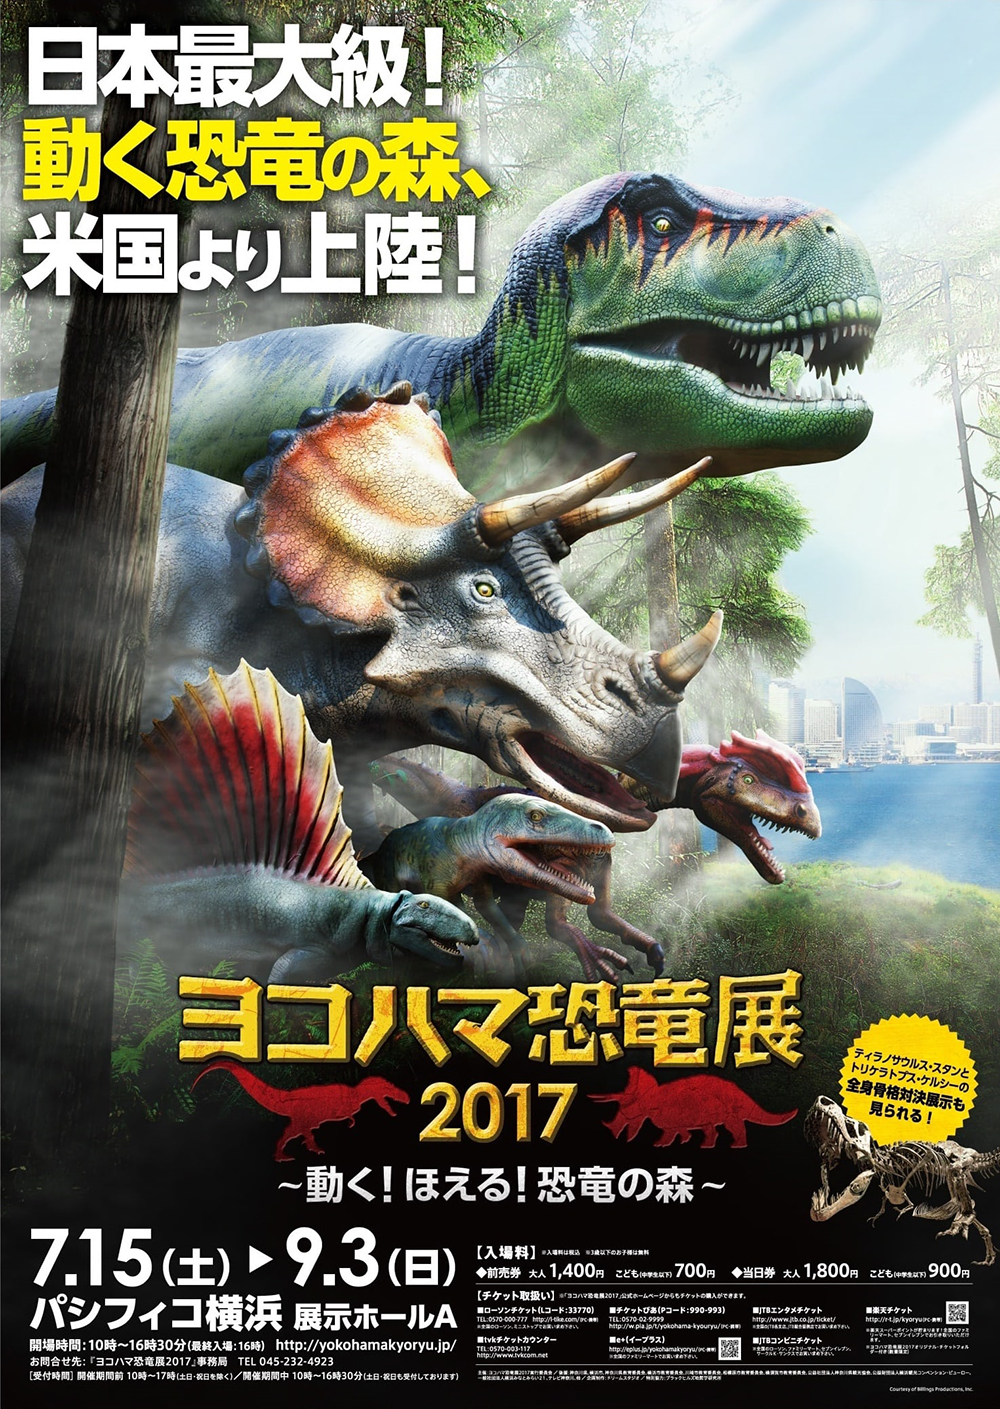 ヨコハマ恐竜展2017 概要